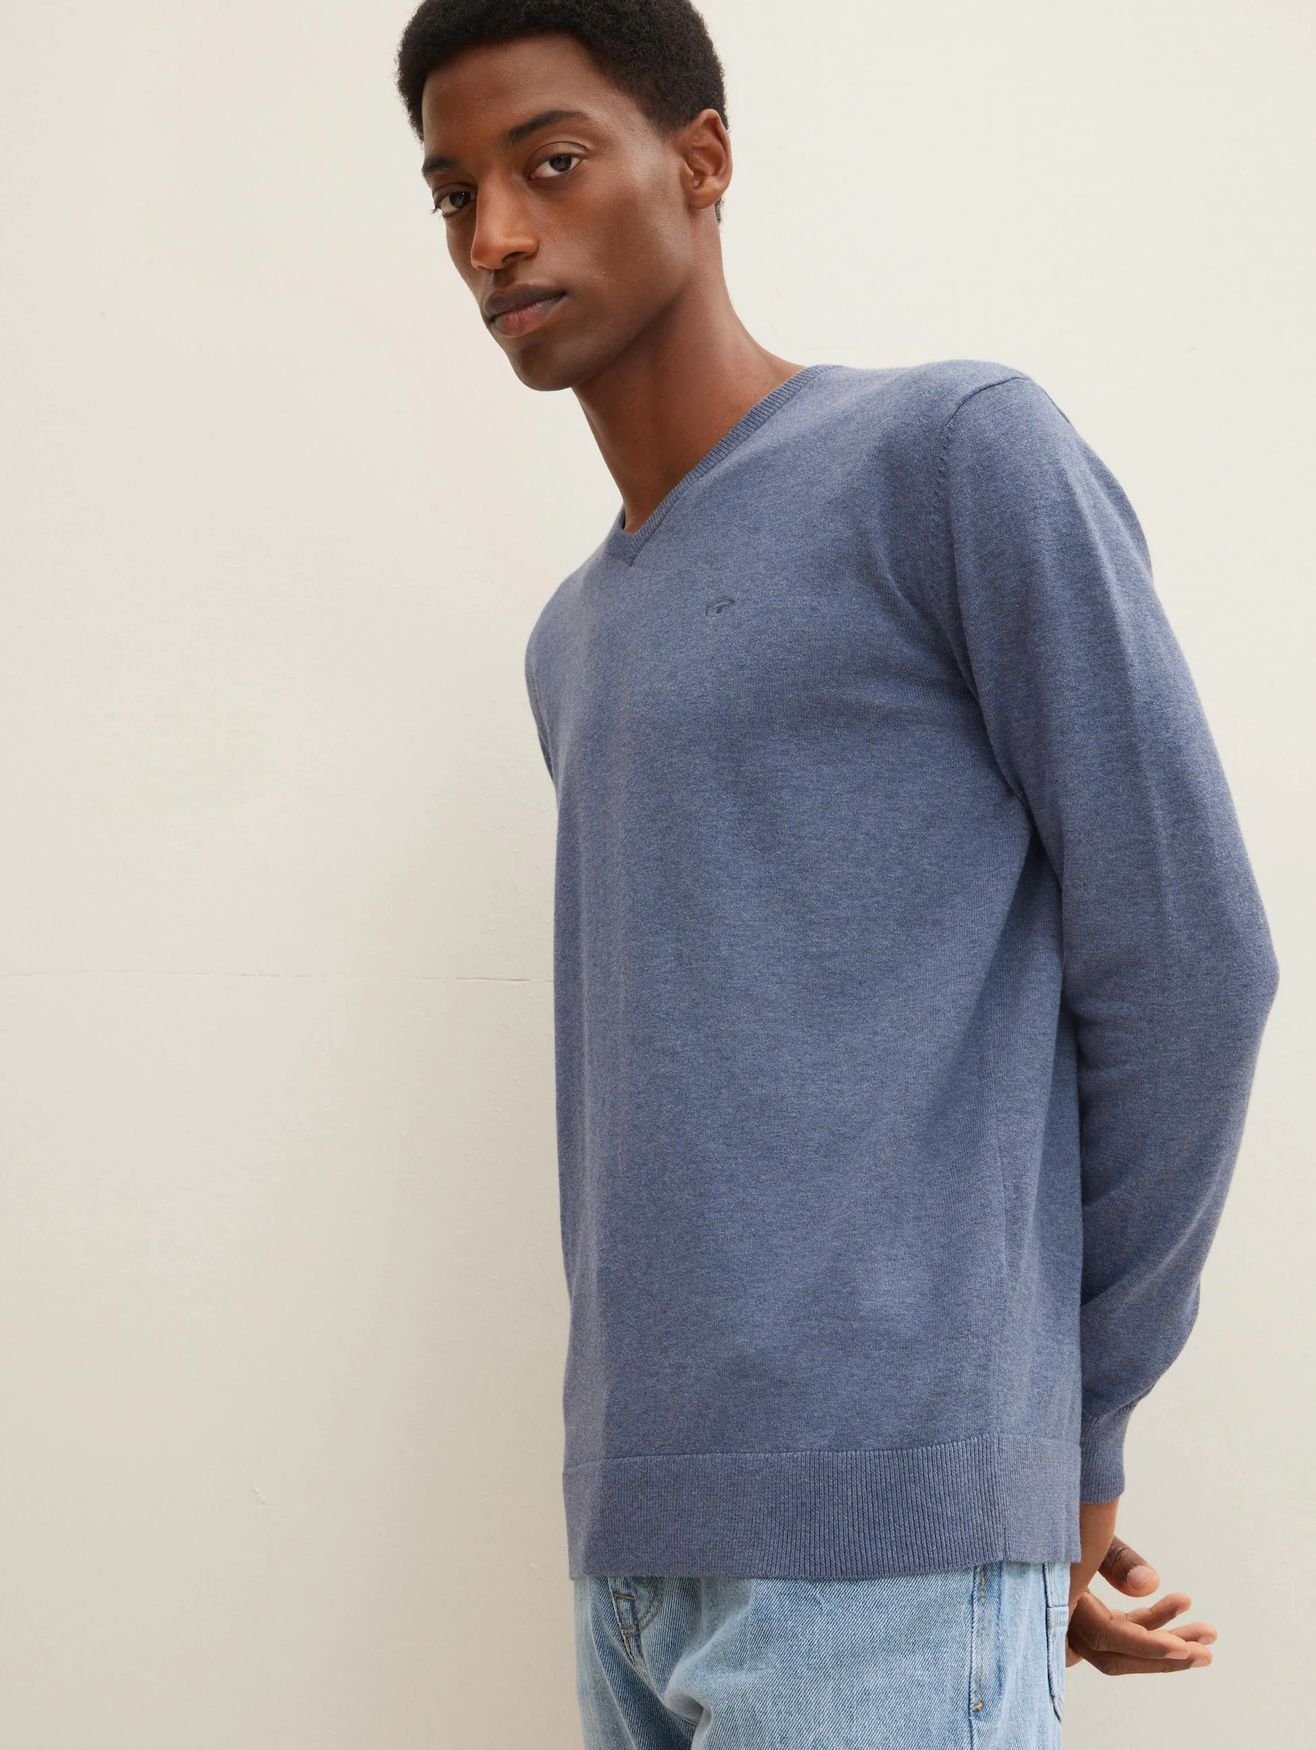 in Strickpullover Sweater Pullover Blau TAILOR TOM 4652 V-Ausschnitt Basic Dünner Feinstrick